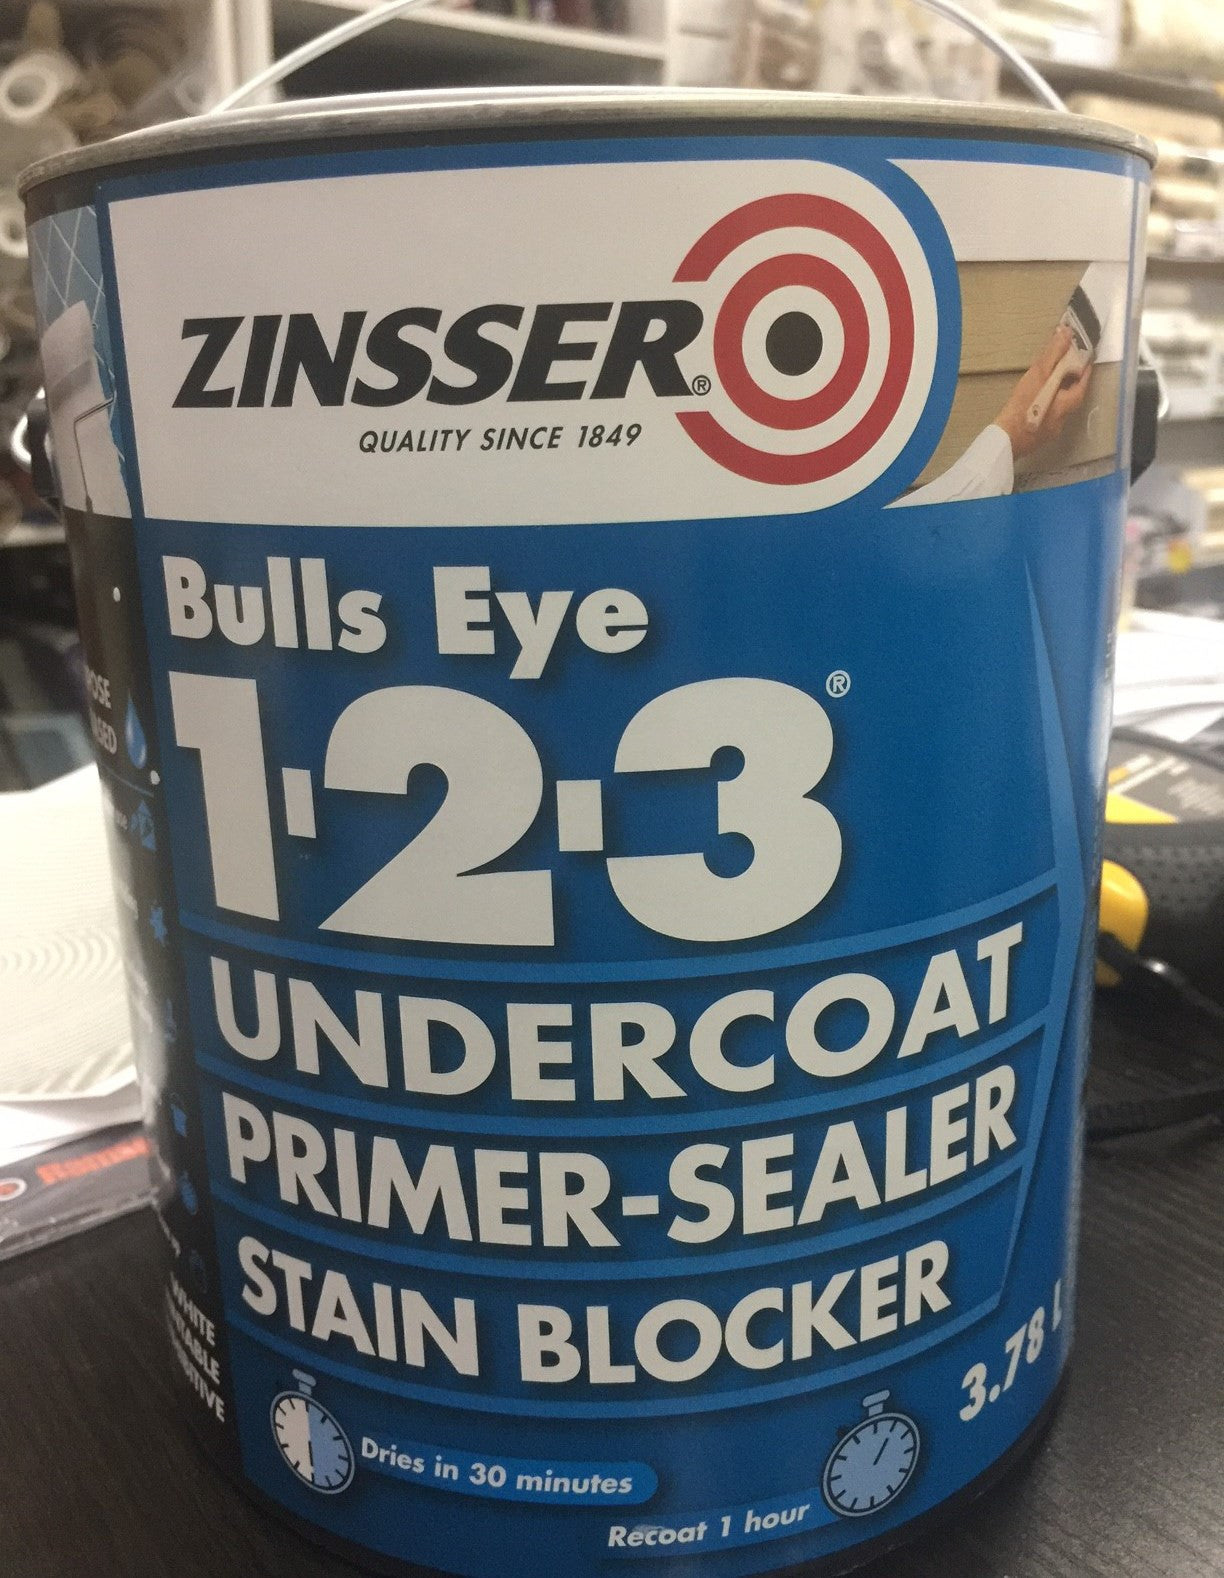 Zinsser Bulls Eye 123 Undercoat Primer-Sealer Stain Blocker 3.78 L